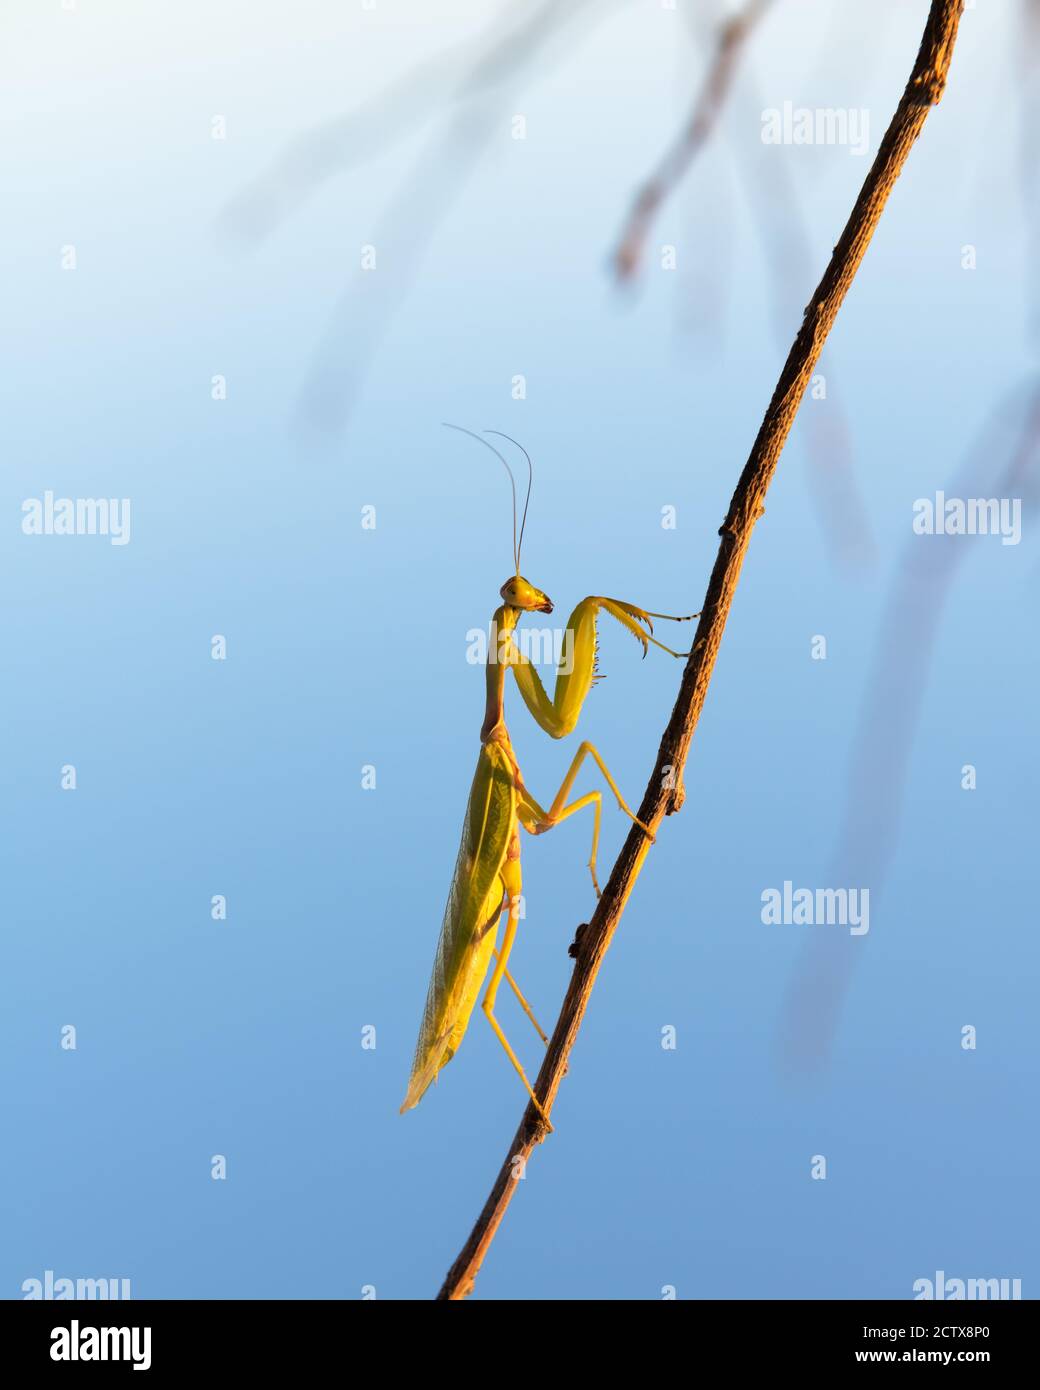 European Mantis religiosa ou priant Mantis sur Twigg gros plan. Prise de vue macro. Photographie d'insectes Banque D'Images